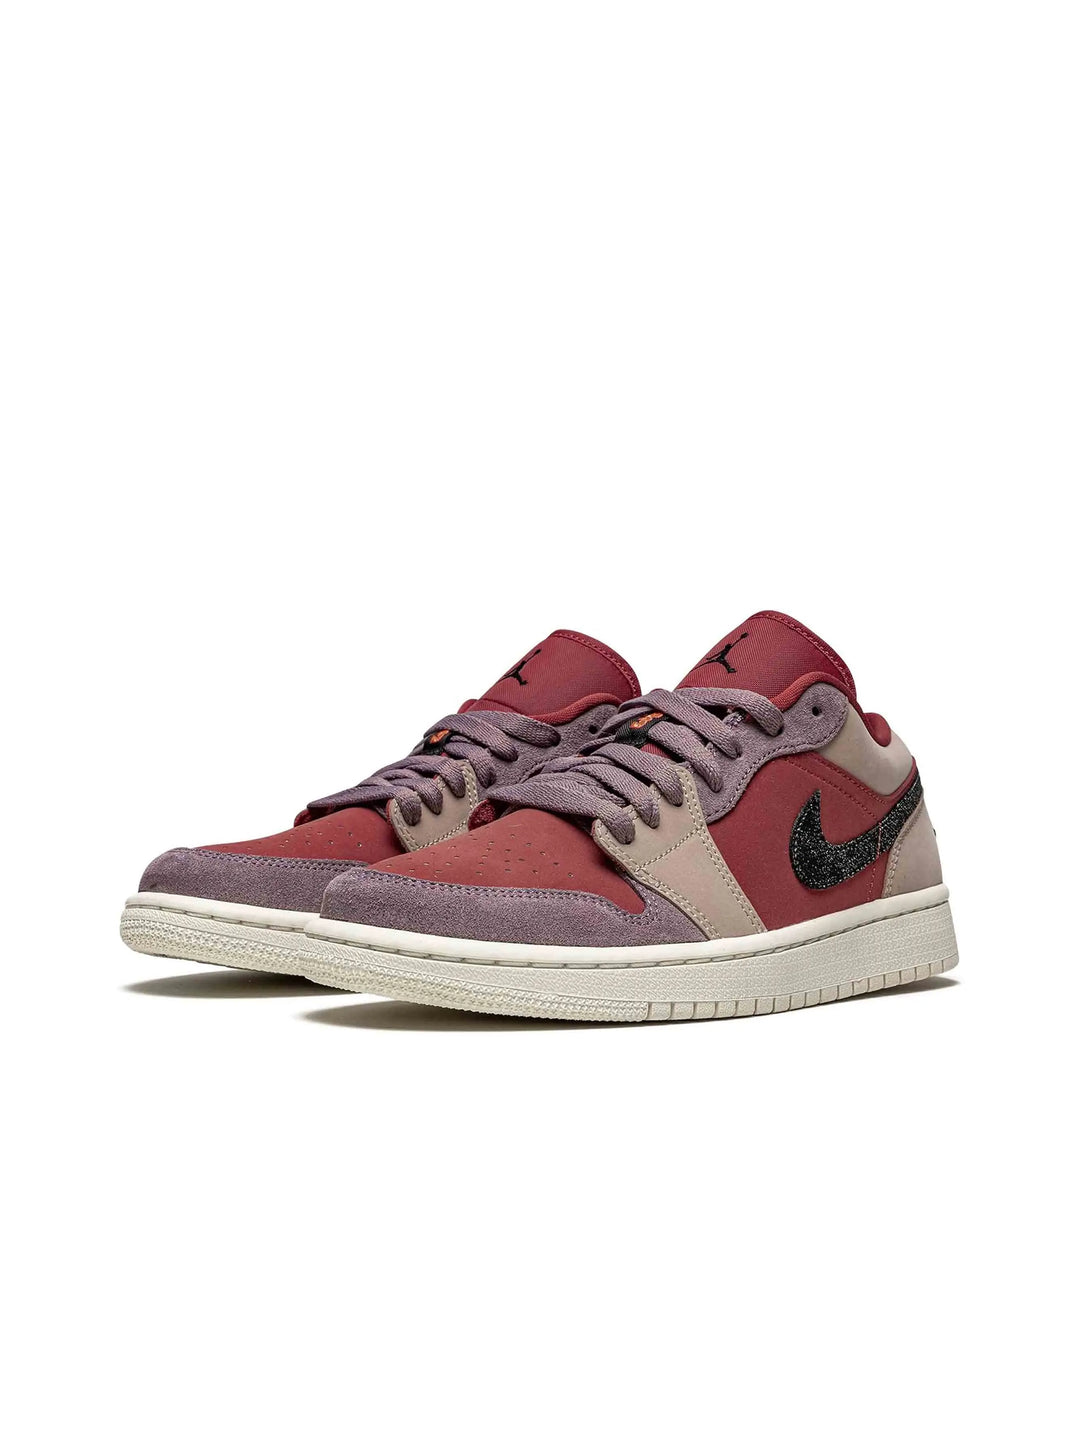 Nike Air Jordan 1 Low Canyon Rust (W) - Prior